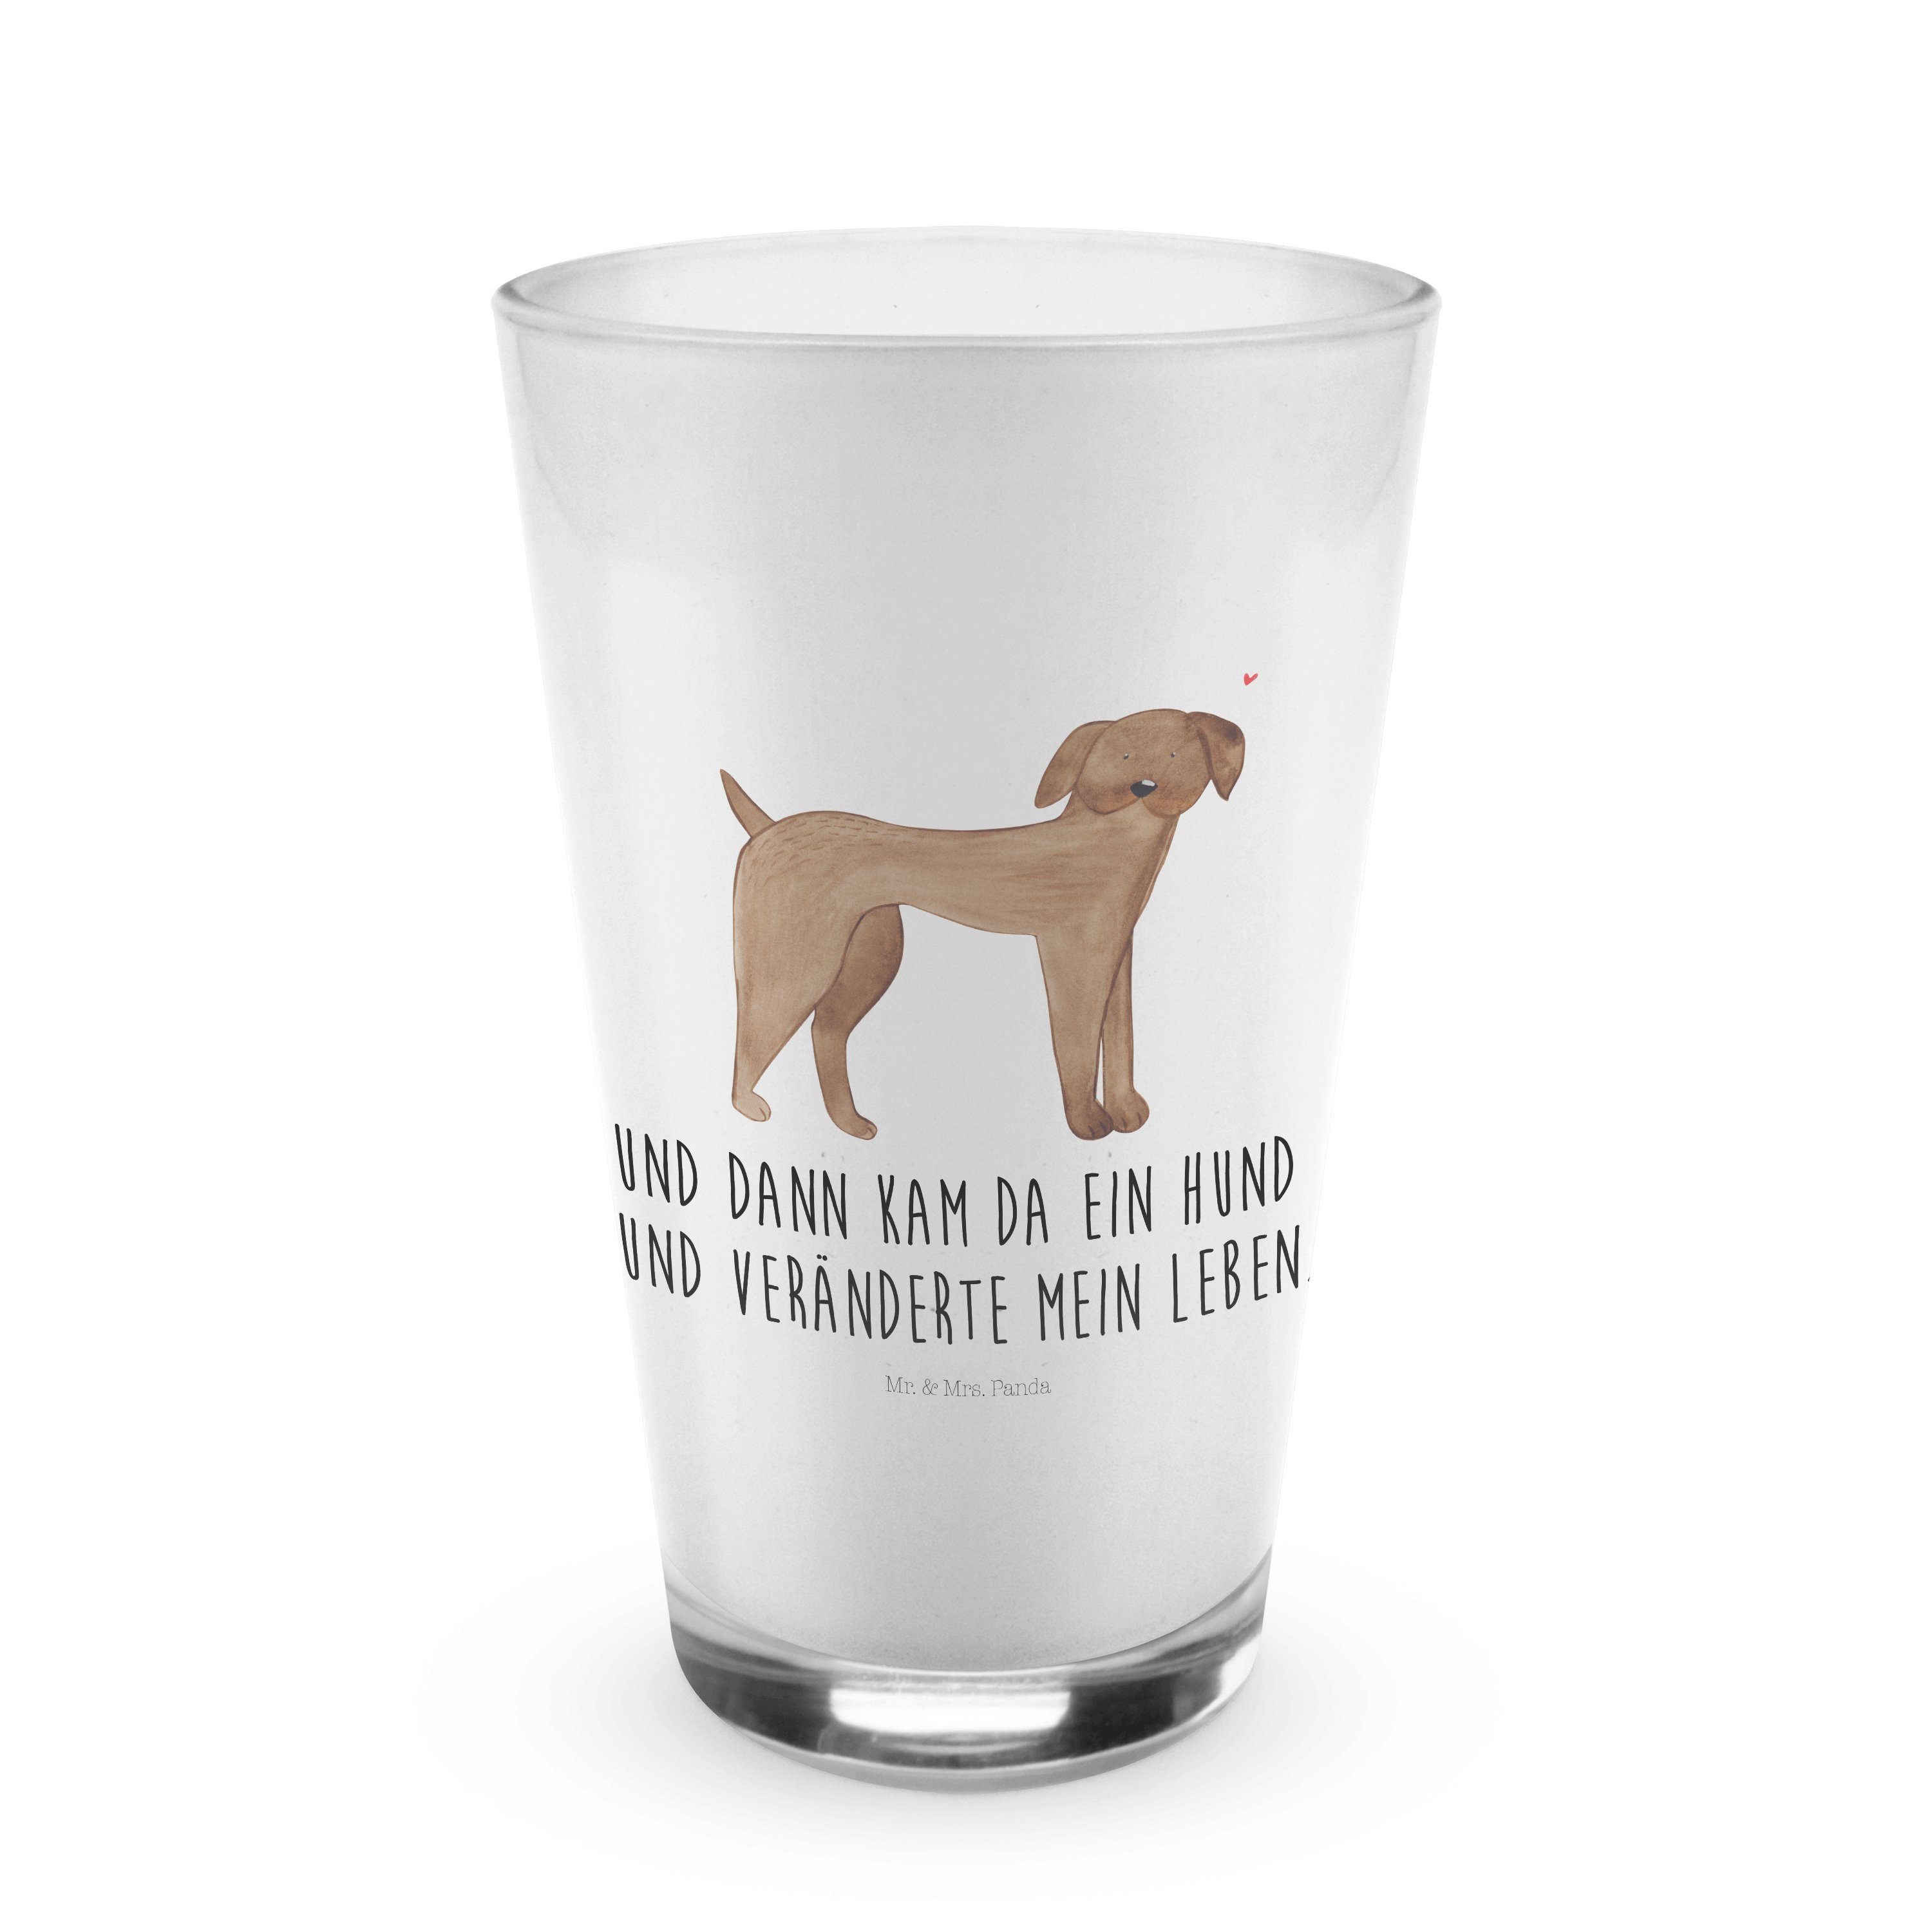 Mr. & Mrs. Panda Glas Hund Dogge - Transparent - Geschenk, Vierbeiner, Hunde, Cappuccino Ta, Premium Glas